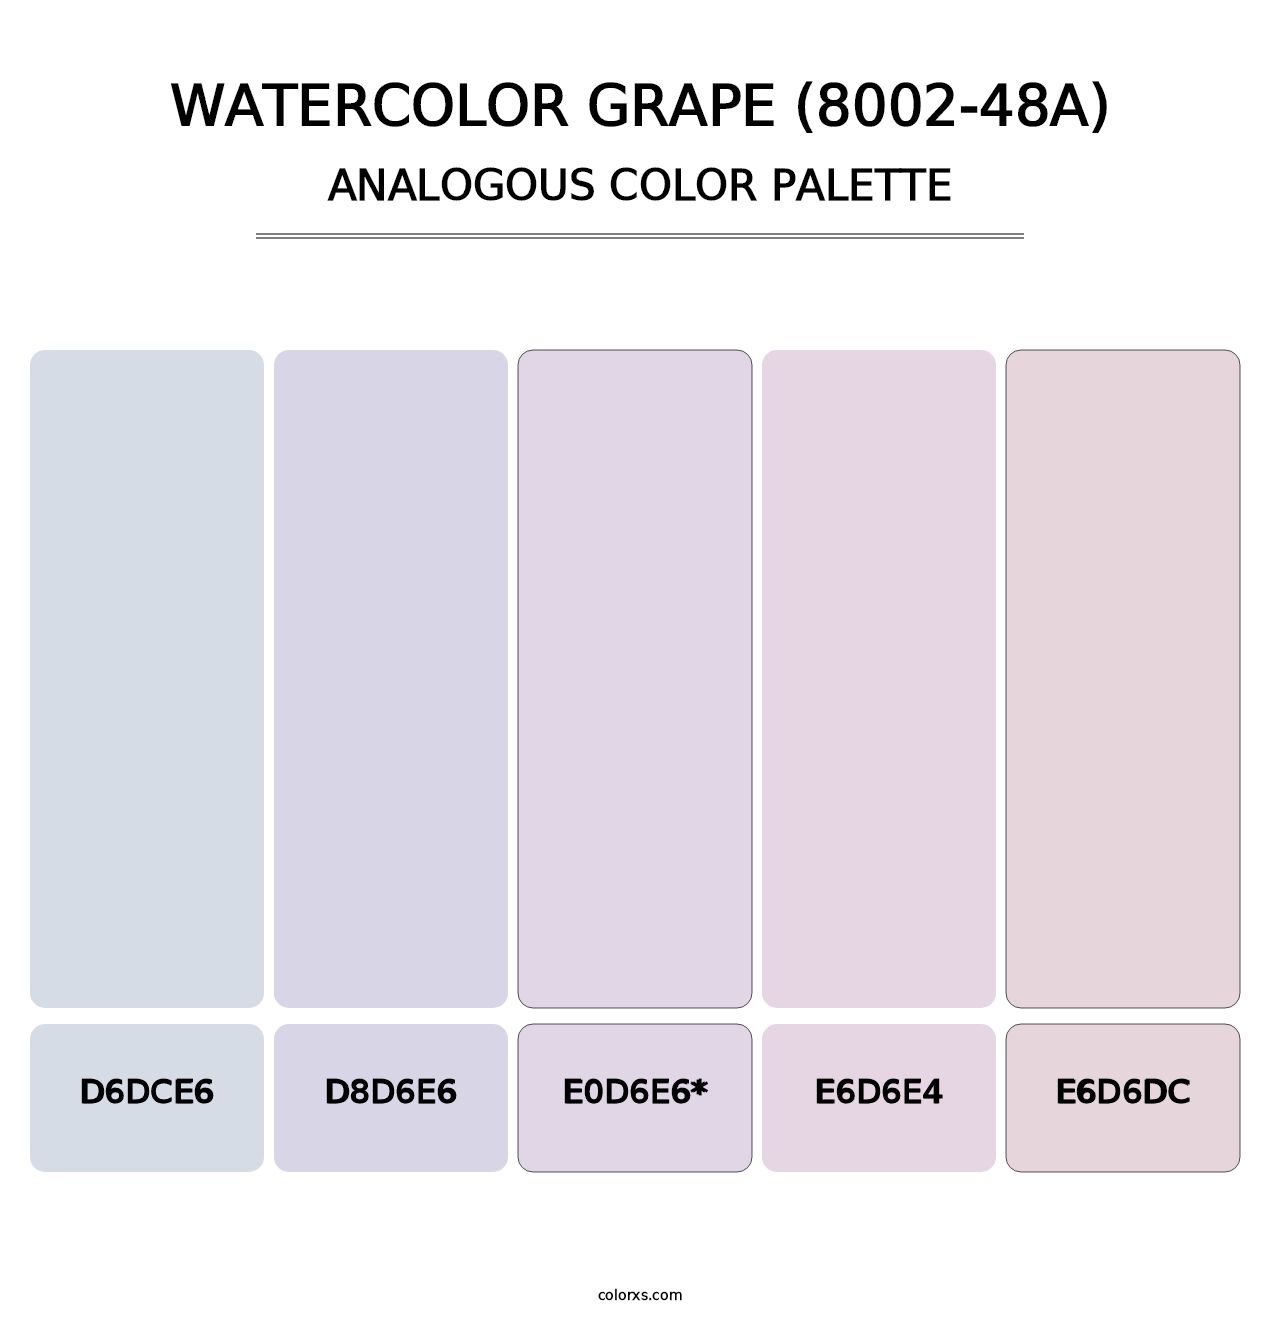 Watercolor Grape (8002-48A) - Analogous Color Palette